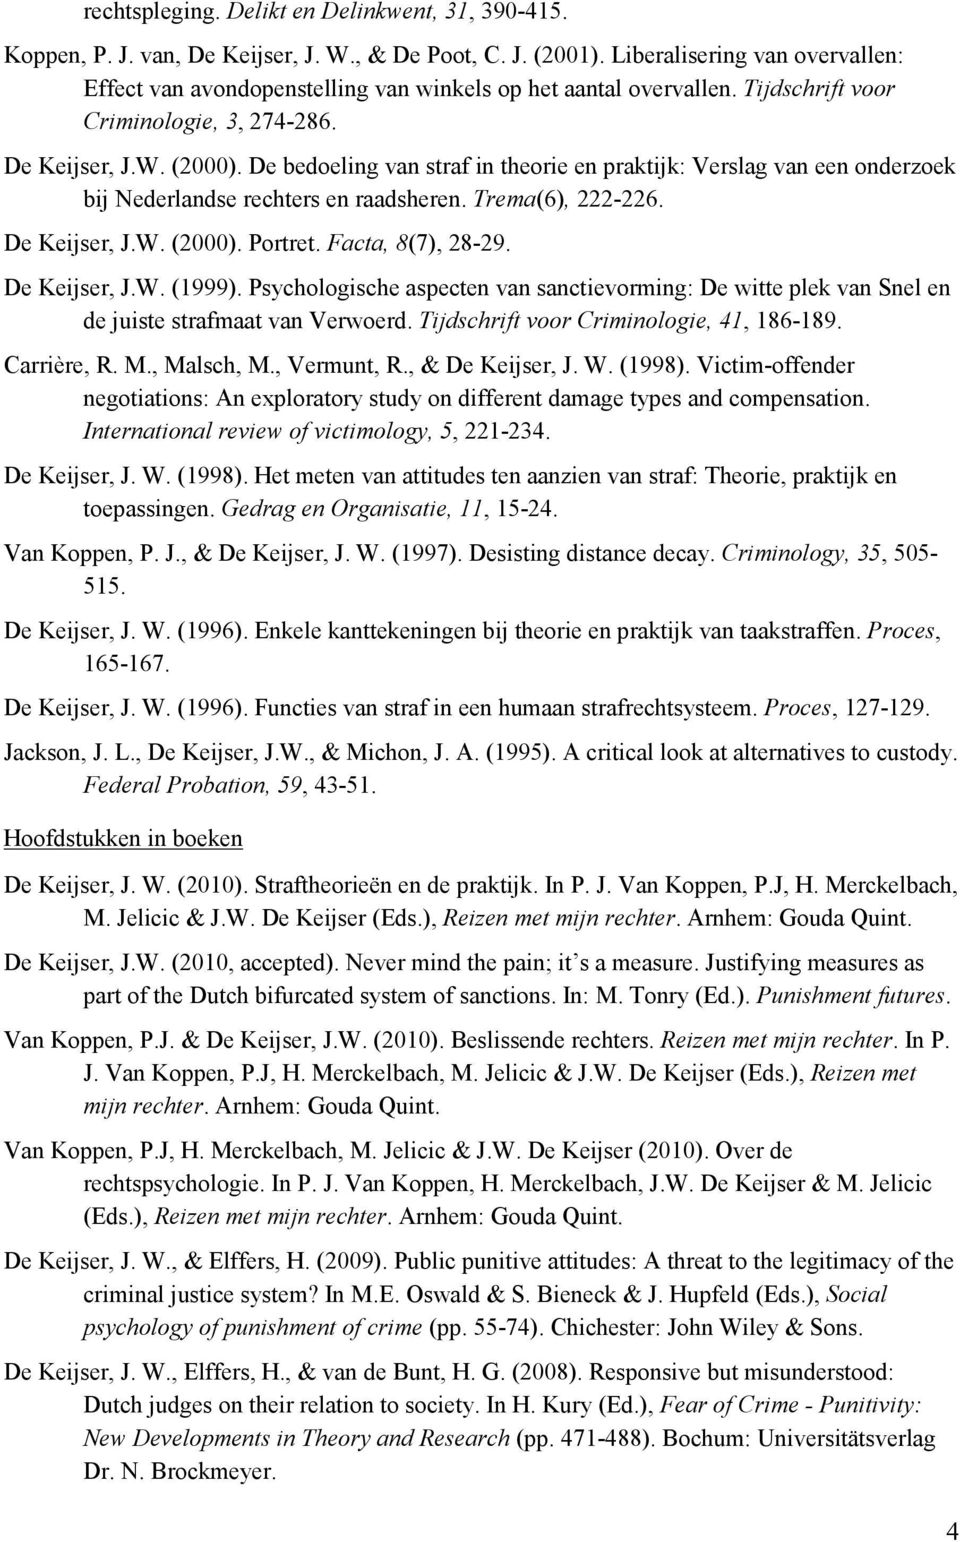 De bedoeling van straf in theorie en praktijk: Verslag van een onderzoek bij Nederlandse rechters en raadsheren. Trema(6), 222-226. De Keijser, J.W. (2000). Portret. Facta, 8(7), 28-29. De Keijser, J.W. (1999).